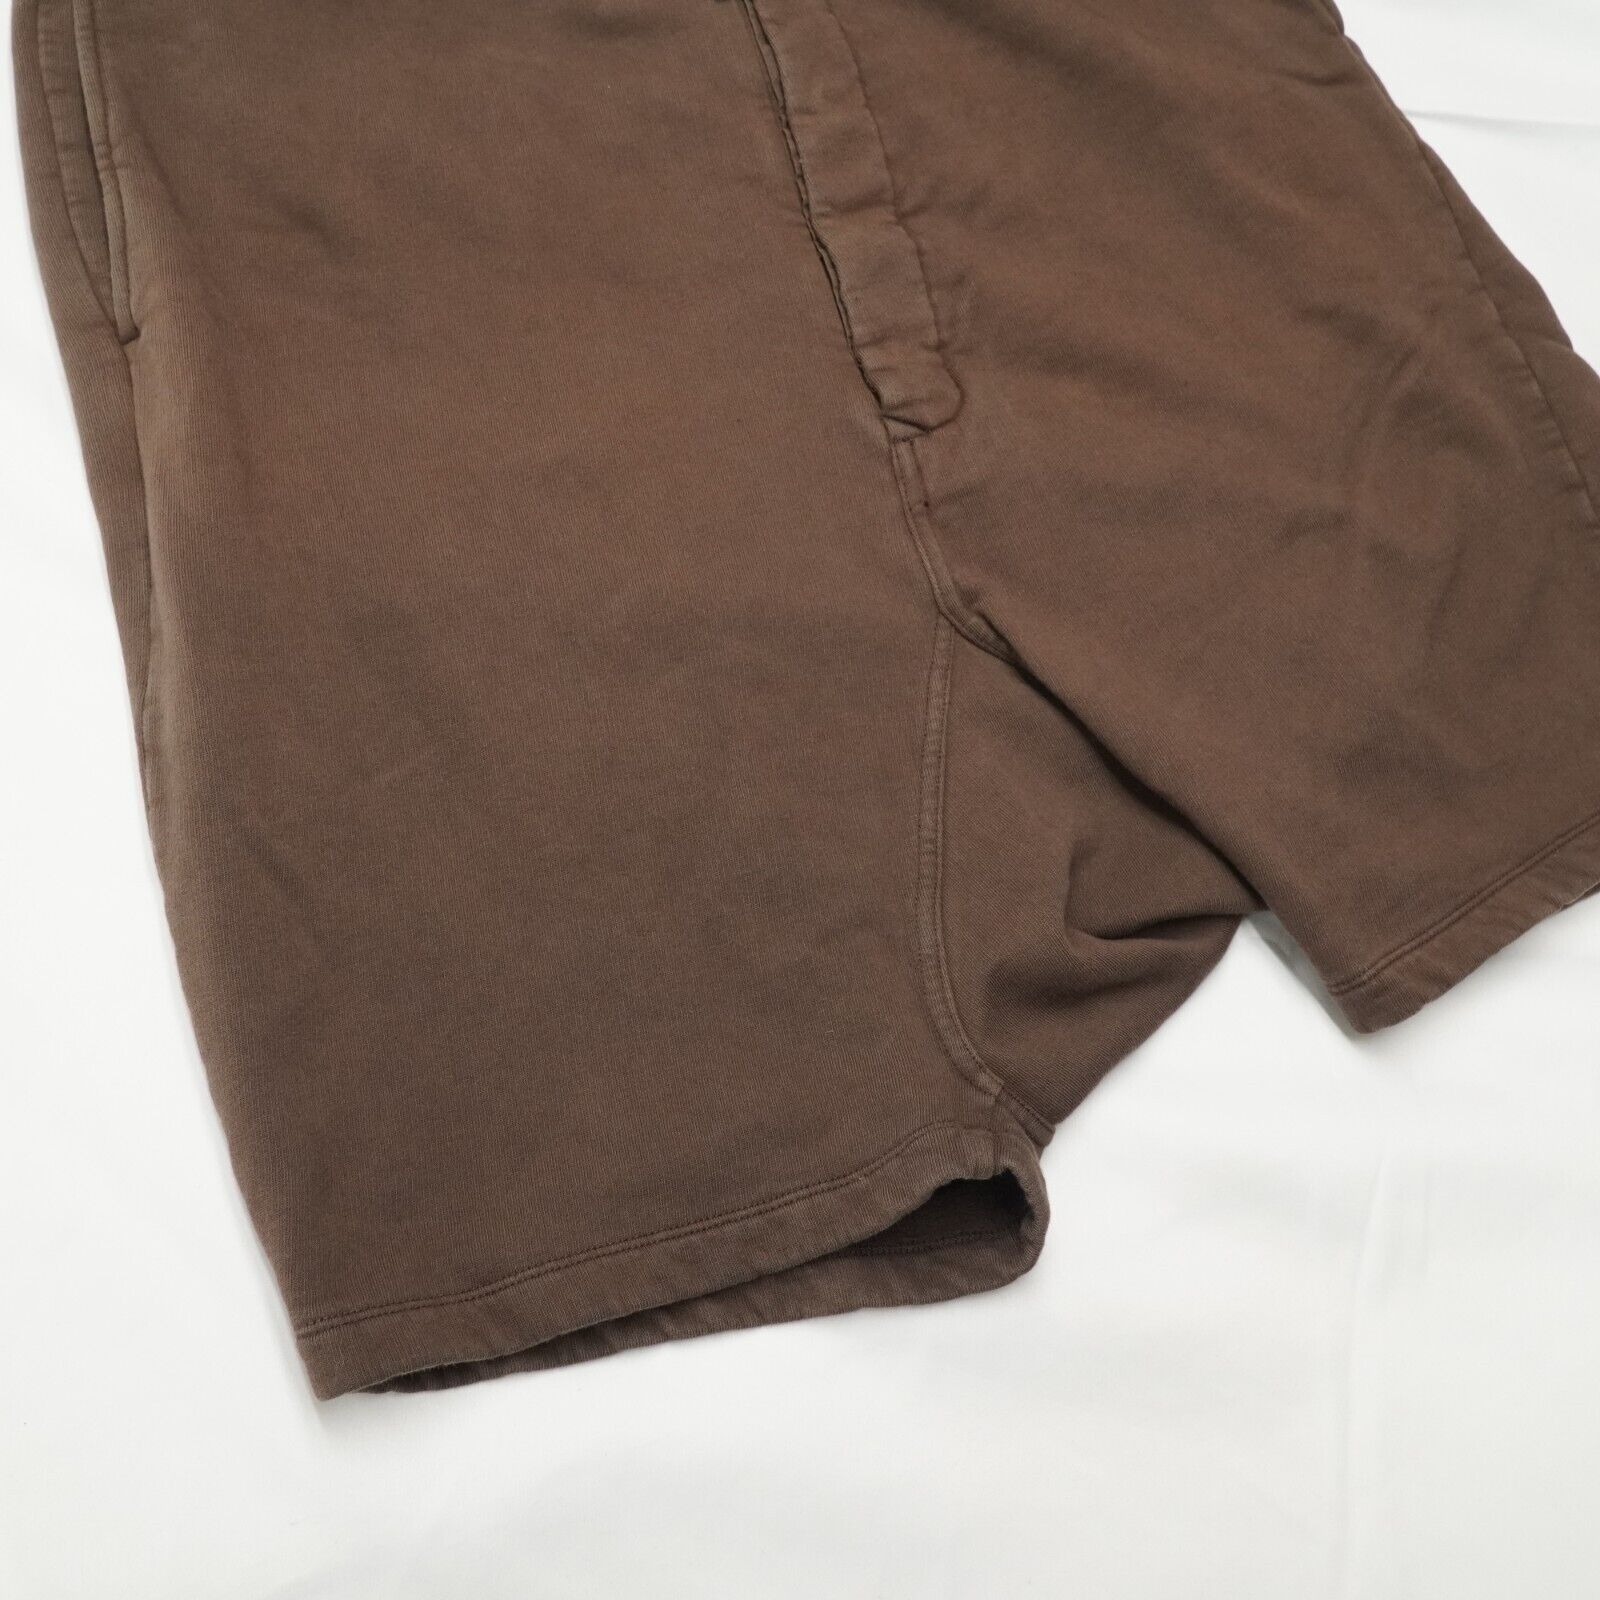 Rick Shorts Drop Crotch Cotton Macassar Brown Large - 5